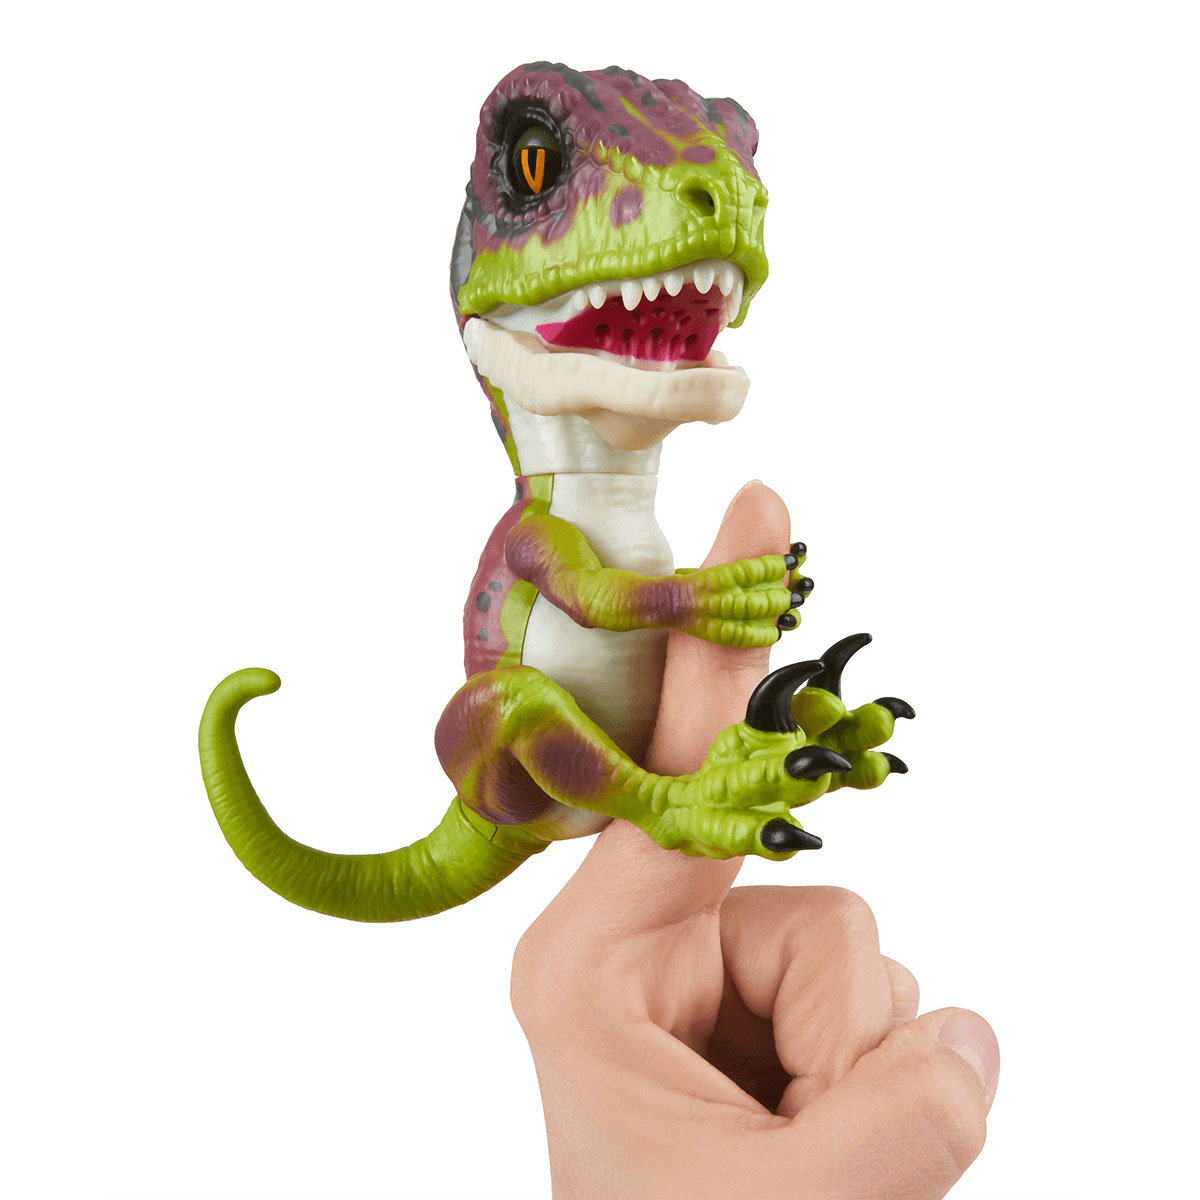  Untamed Raptor Dino by Fingerlings - Stealth